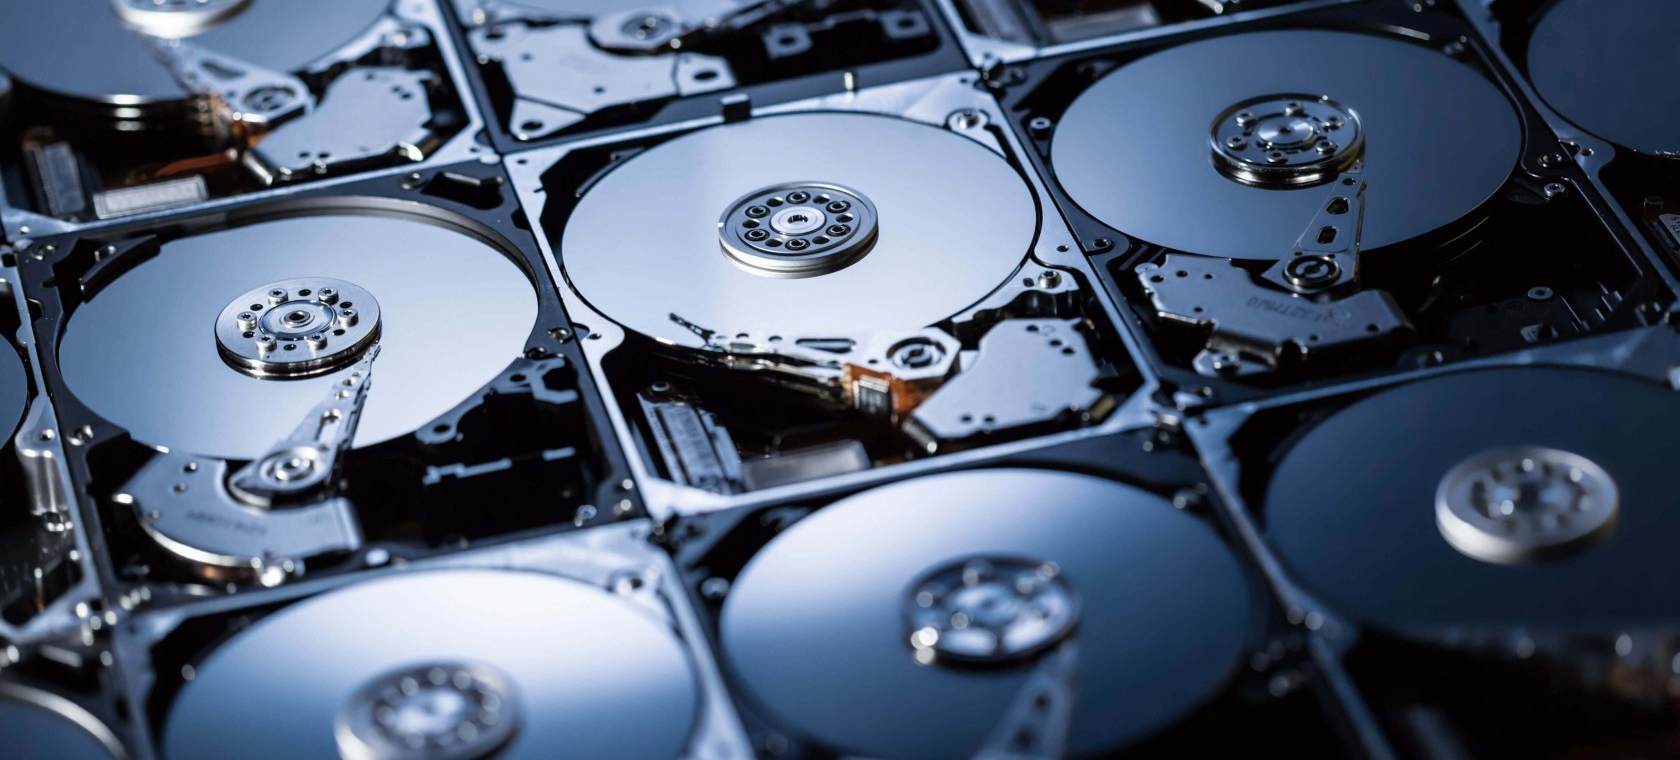 В следующем году Seagate выпустит жесткие диски объемом 18 и 20 Терабайт